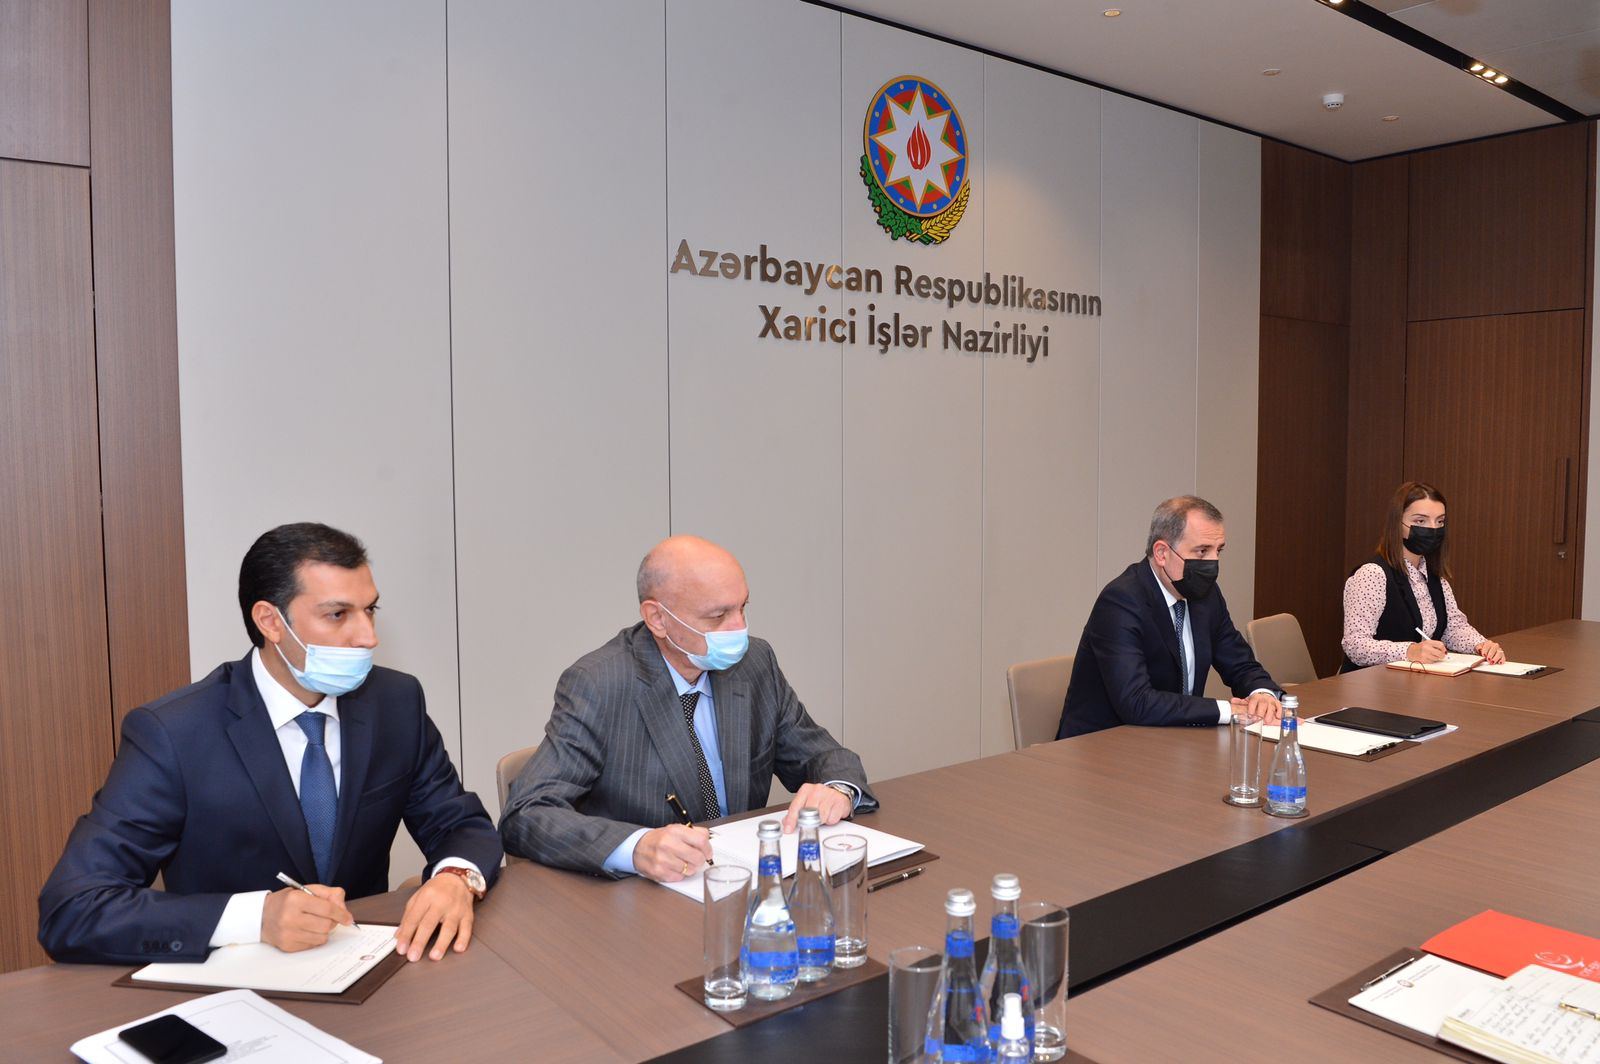 Министр иностранных дел Азербайджана принял делегацию Молодежного форума ОИС (ФОТО)